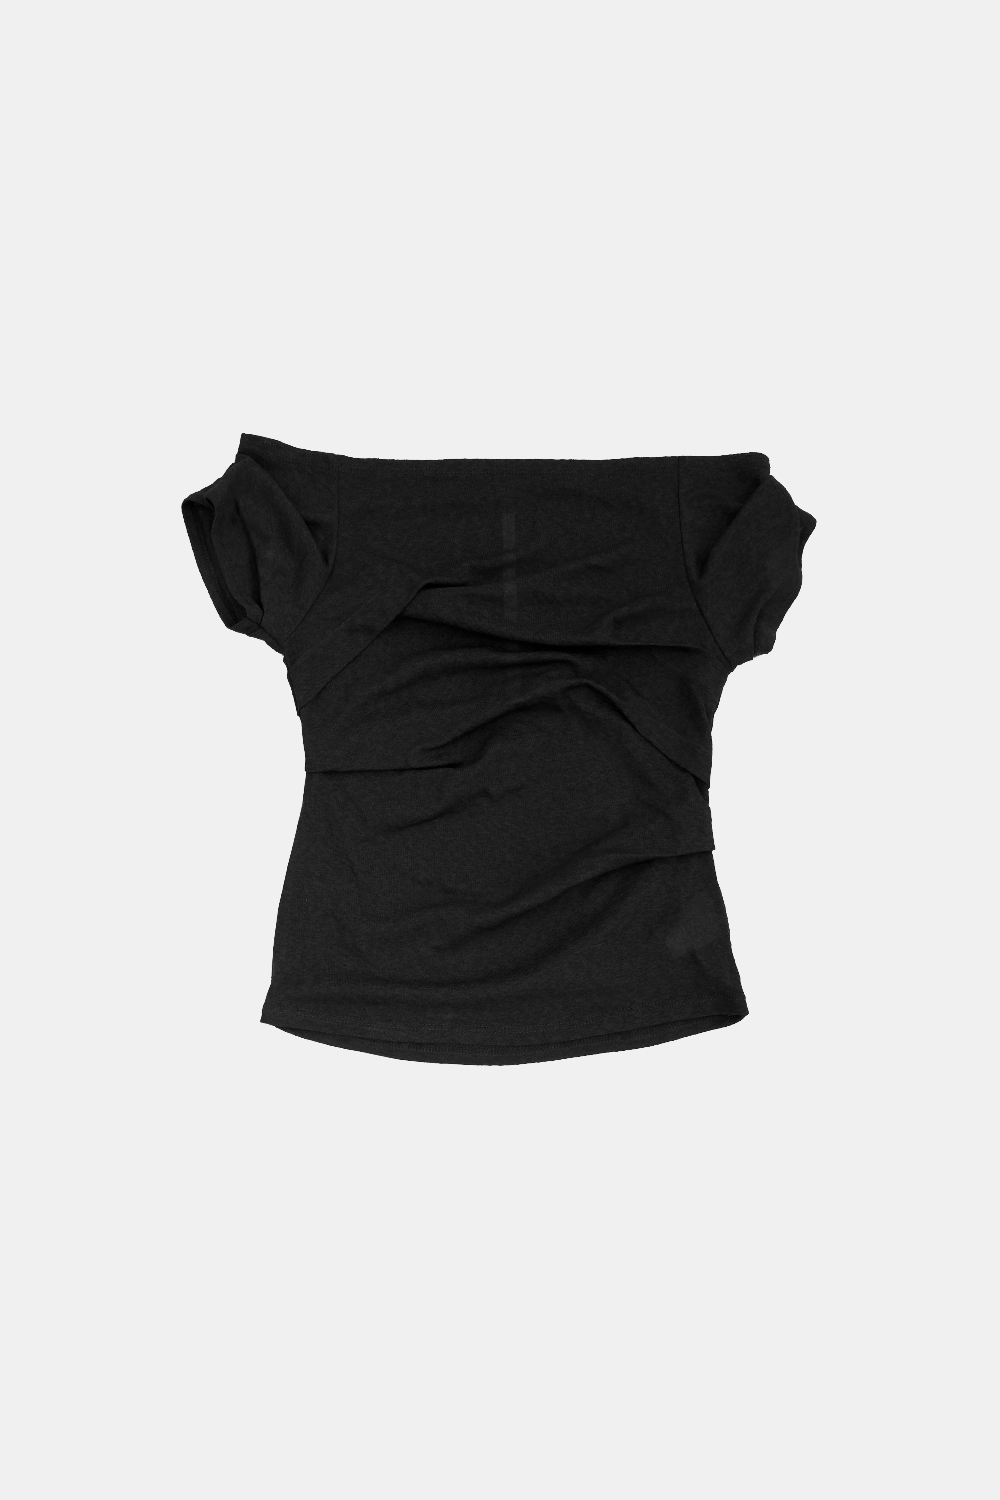 [5/7 예약배송] draping off-shoulder top (black)